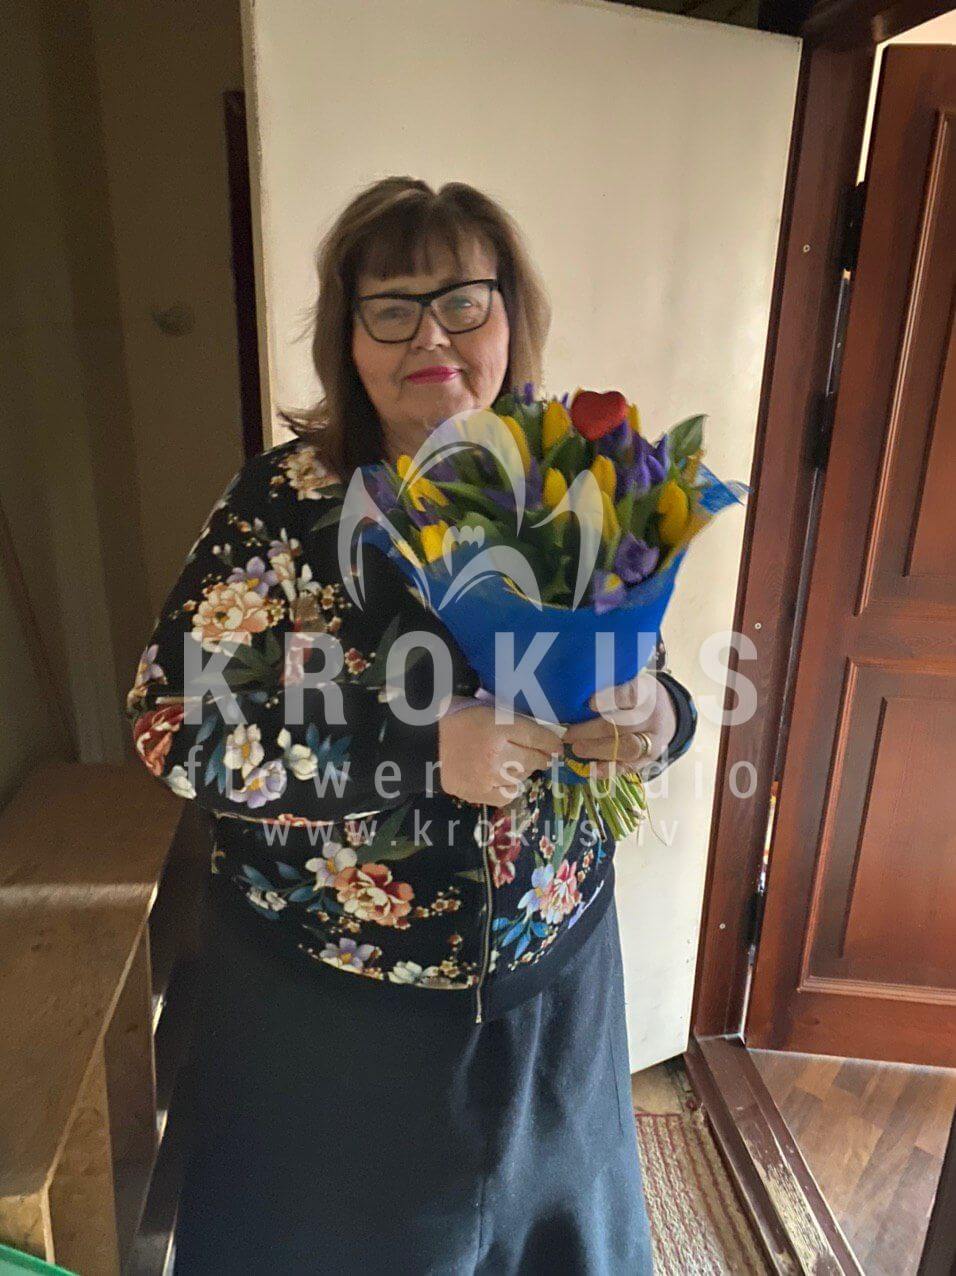 Доставка цветов в город Рига (тюльпаныирисы)